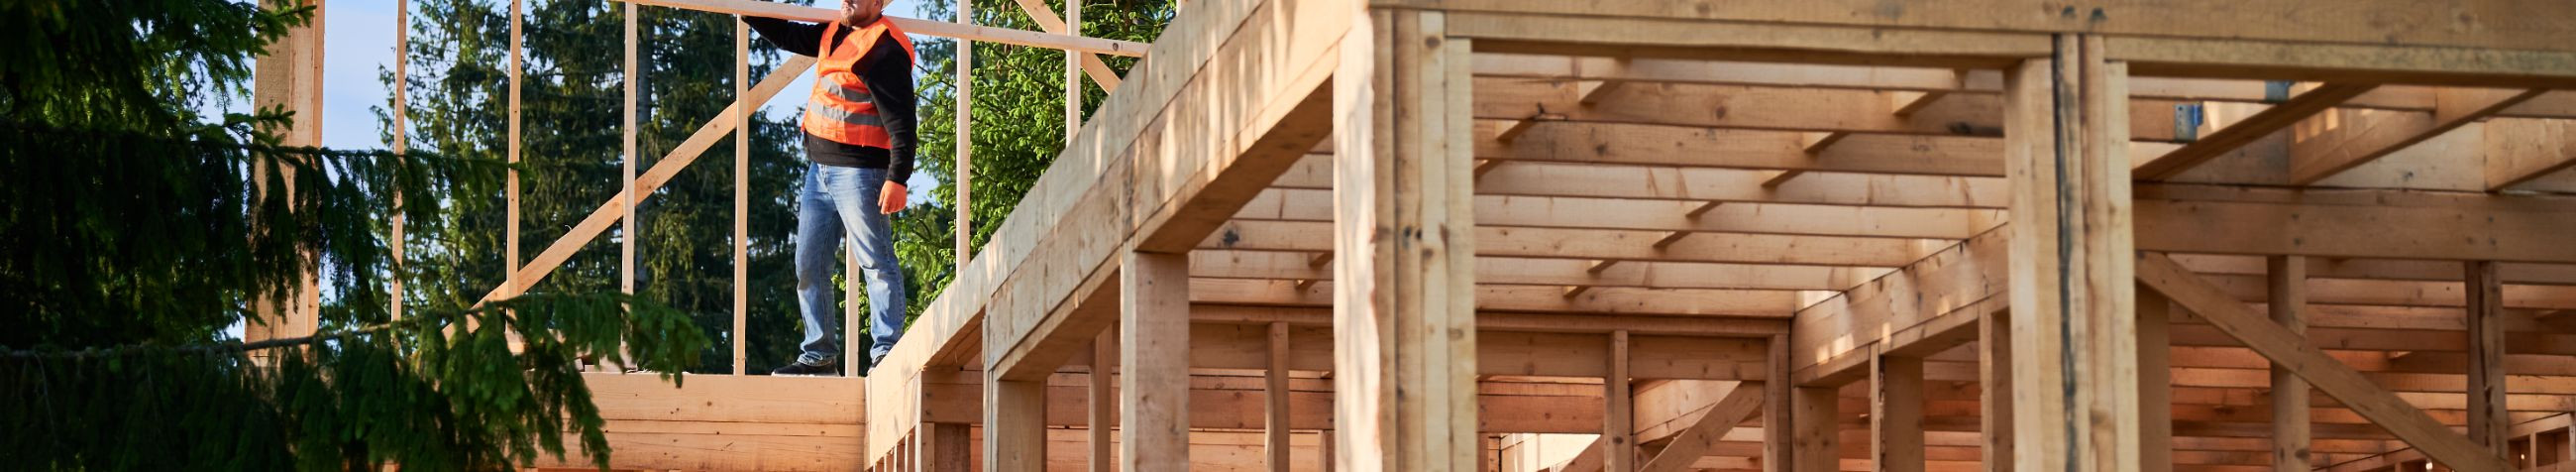 Eesti kapitalil põhinev ehitusfirma, mis on spetsialiseerunud kvaliteetsete väikeelamute ehitamisele ja pakub laia valikut ehitusteenuseid, keskendudes samal ajal eramute ehitusele.